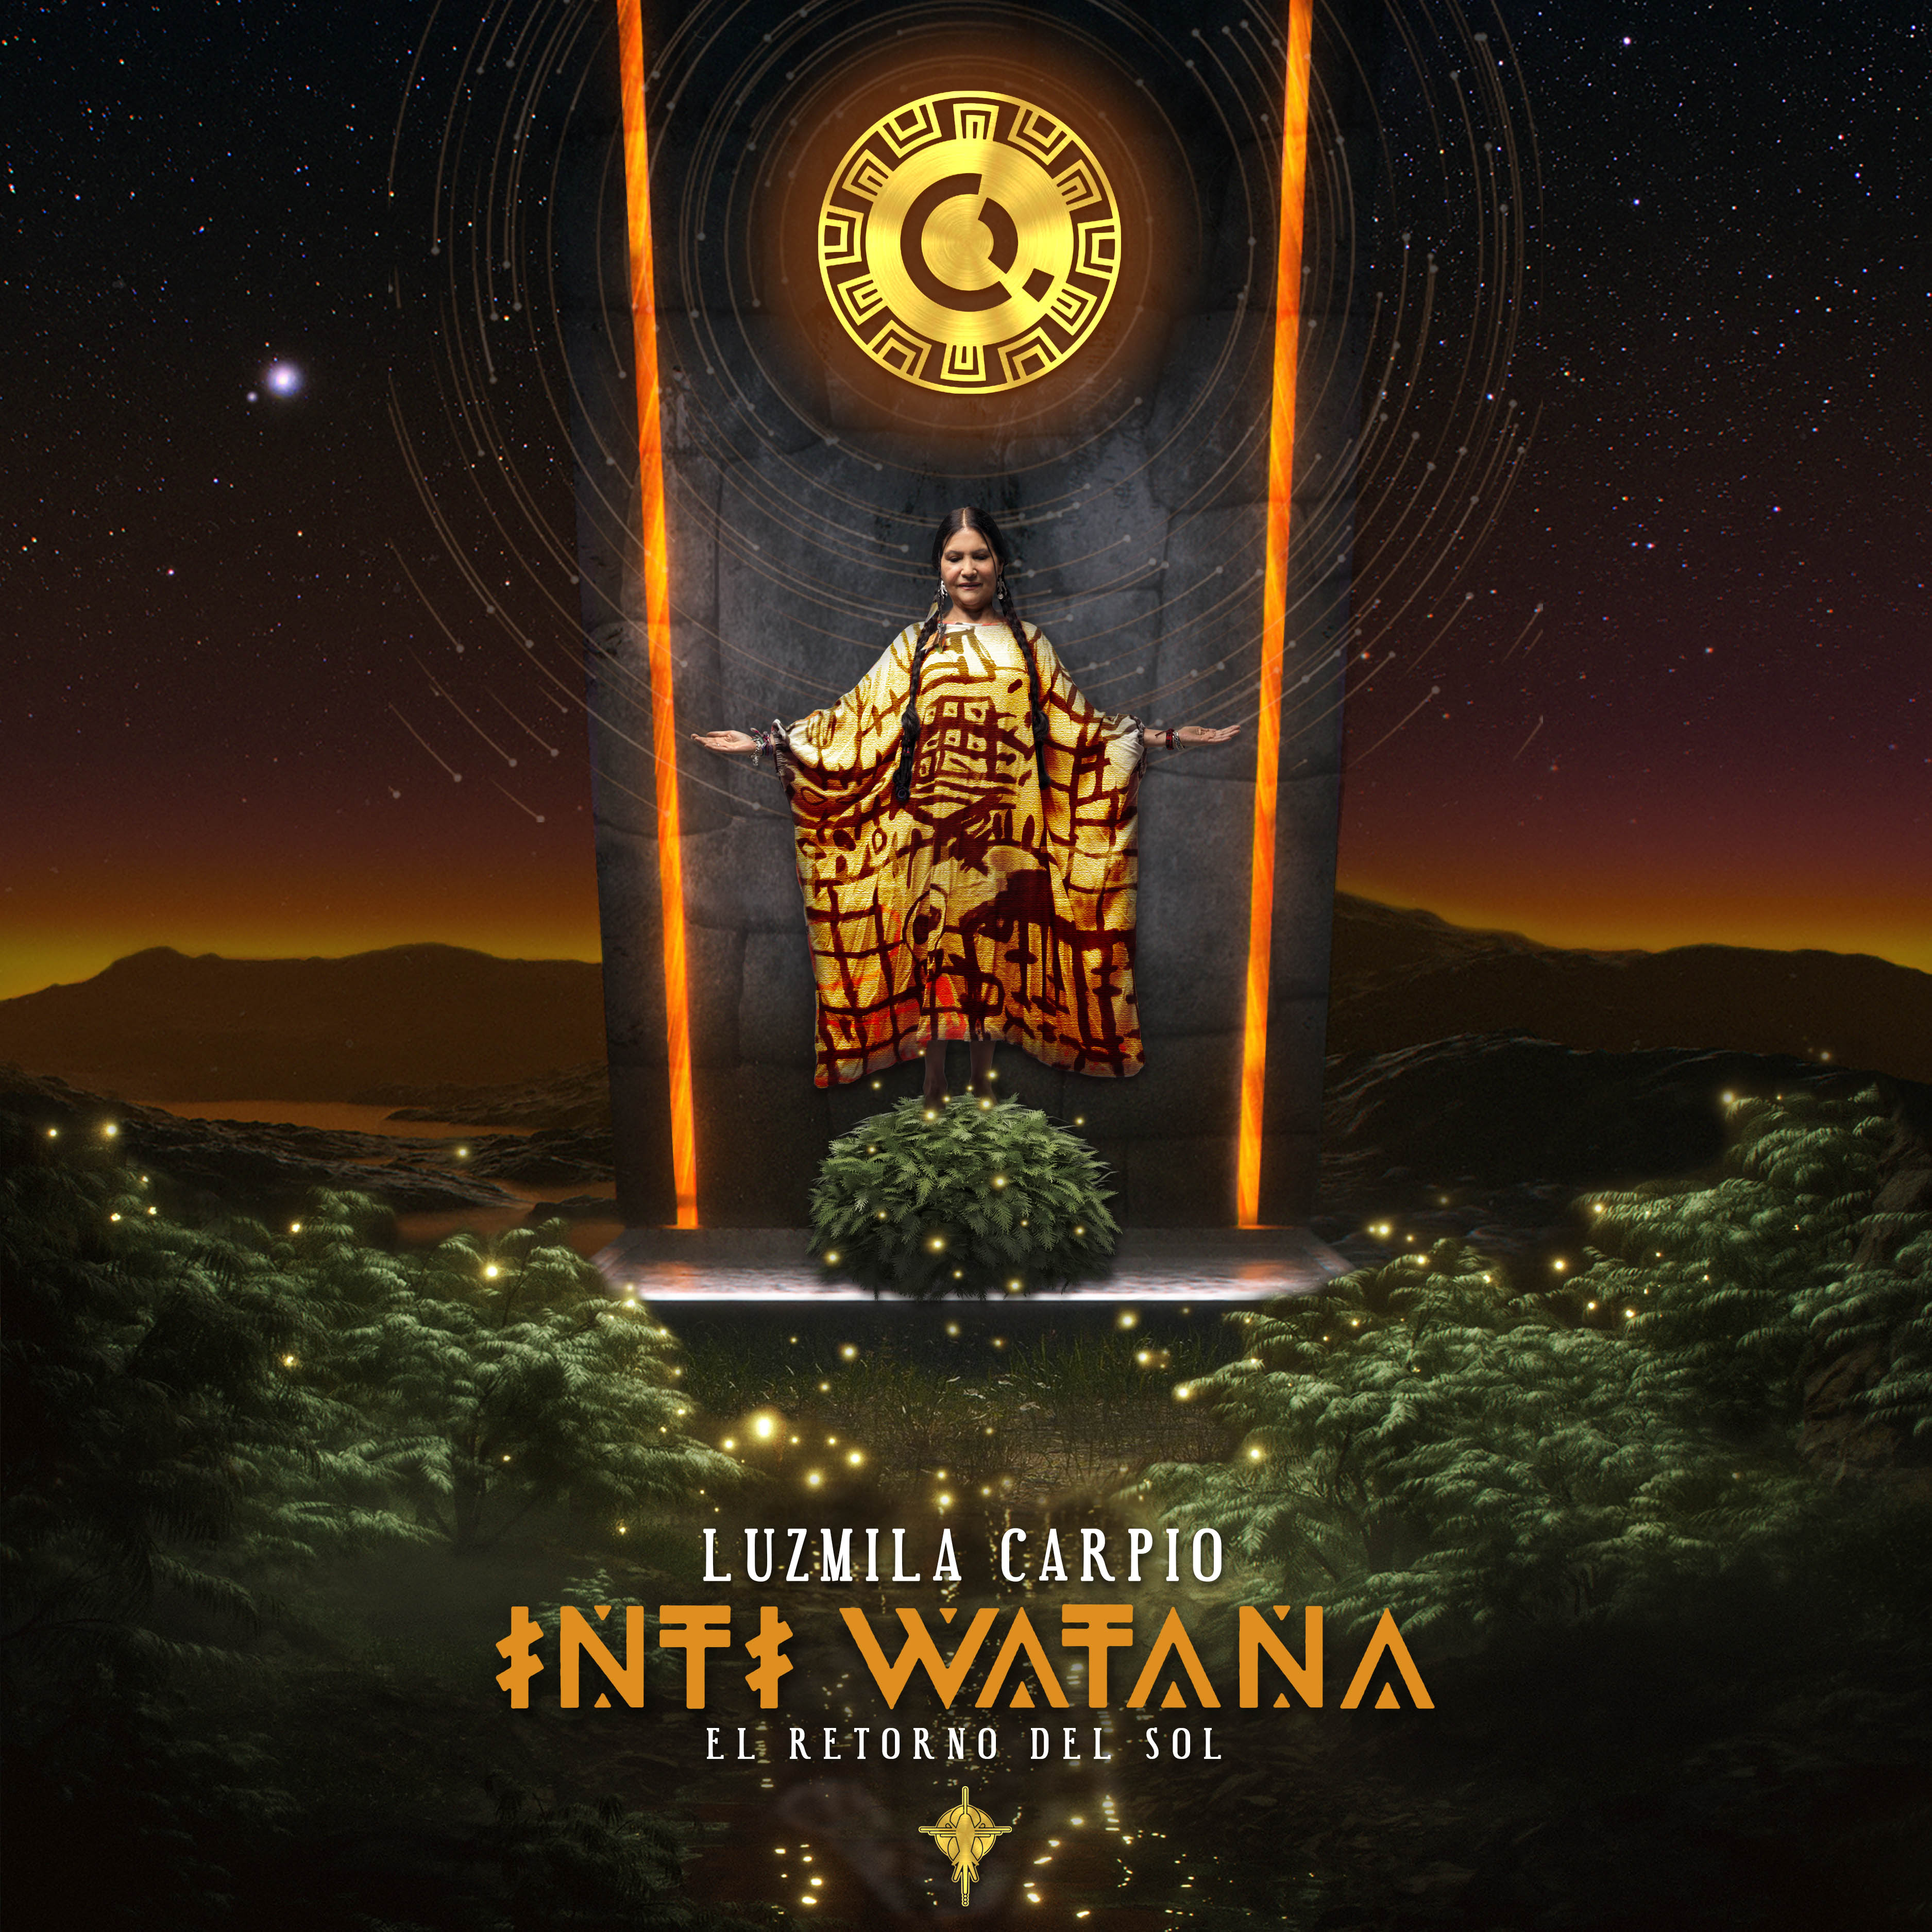 Inti Watana: El Retorno del Sol is Out Now!